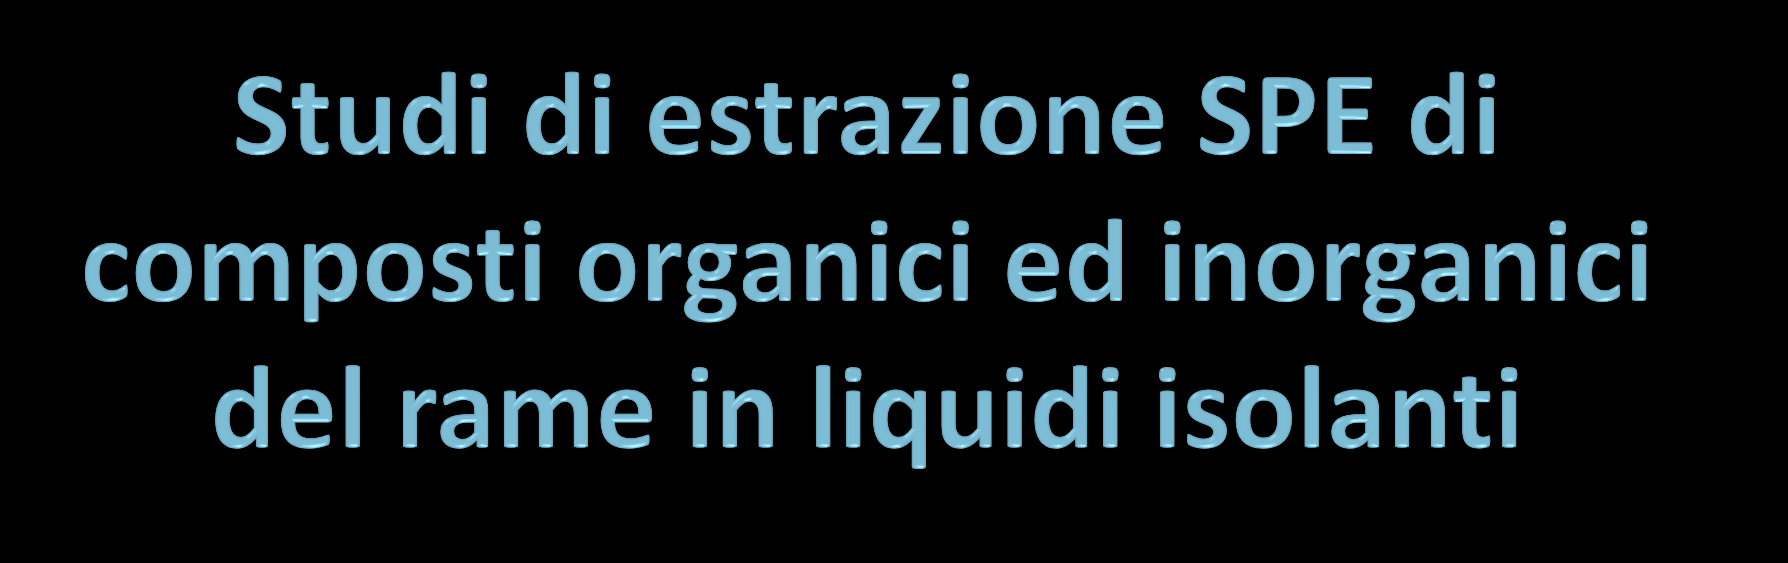 C. Ceccarini 1, R. M. De Carlo 1, R. Maina 2, C. Sarzanini 1, M. C. Bruzzoniti 1,V. Tumiatti 2 1 Dipartimento di Chimica Analitica, via P.